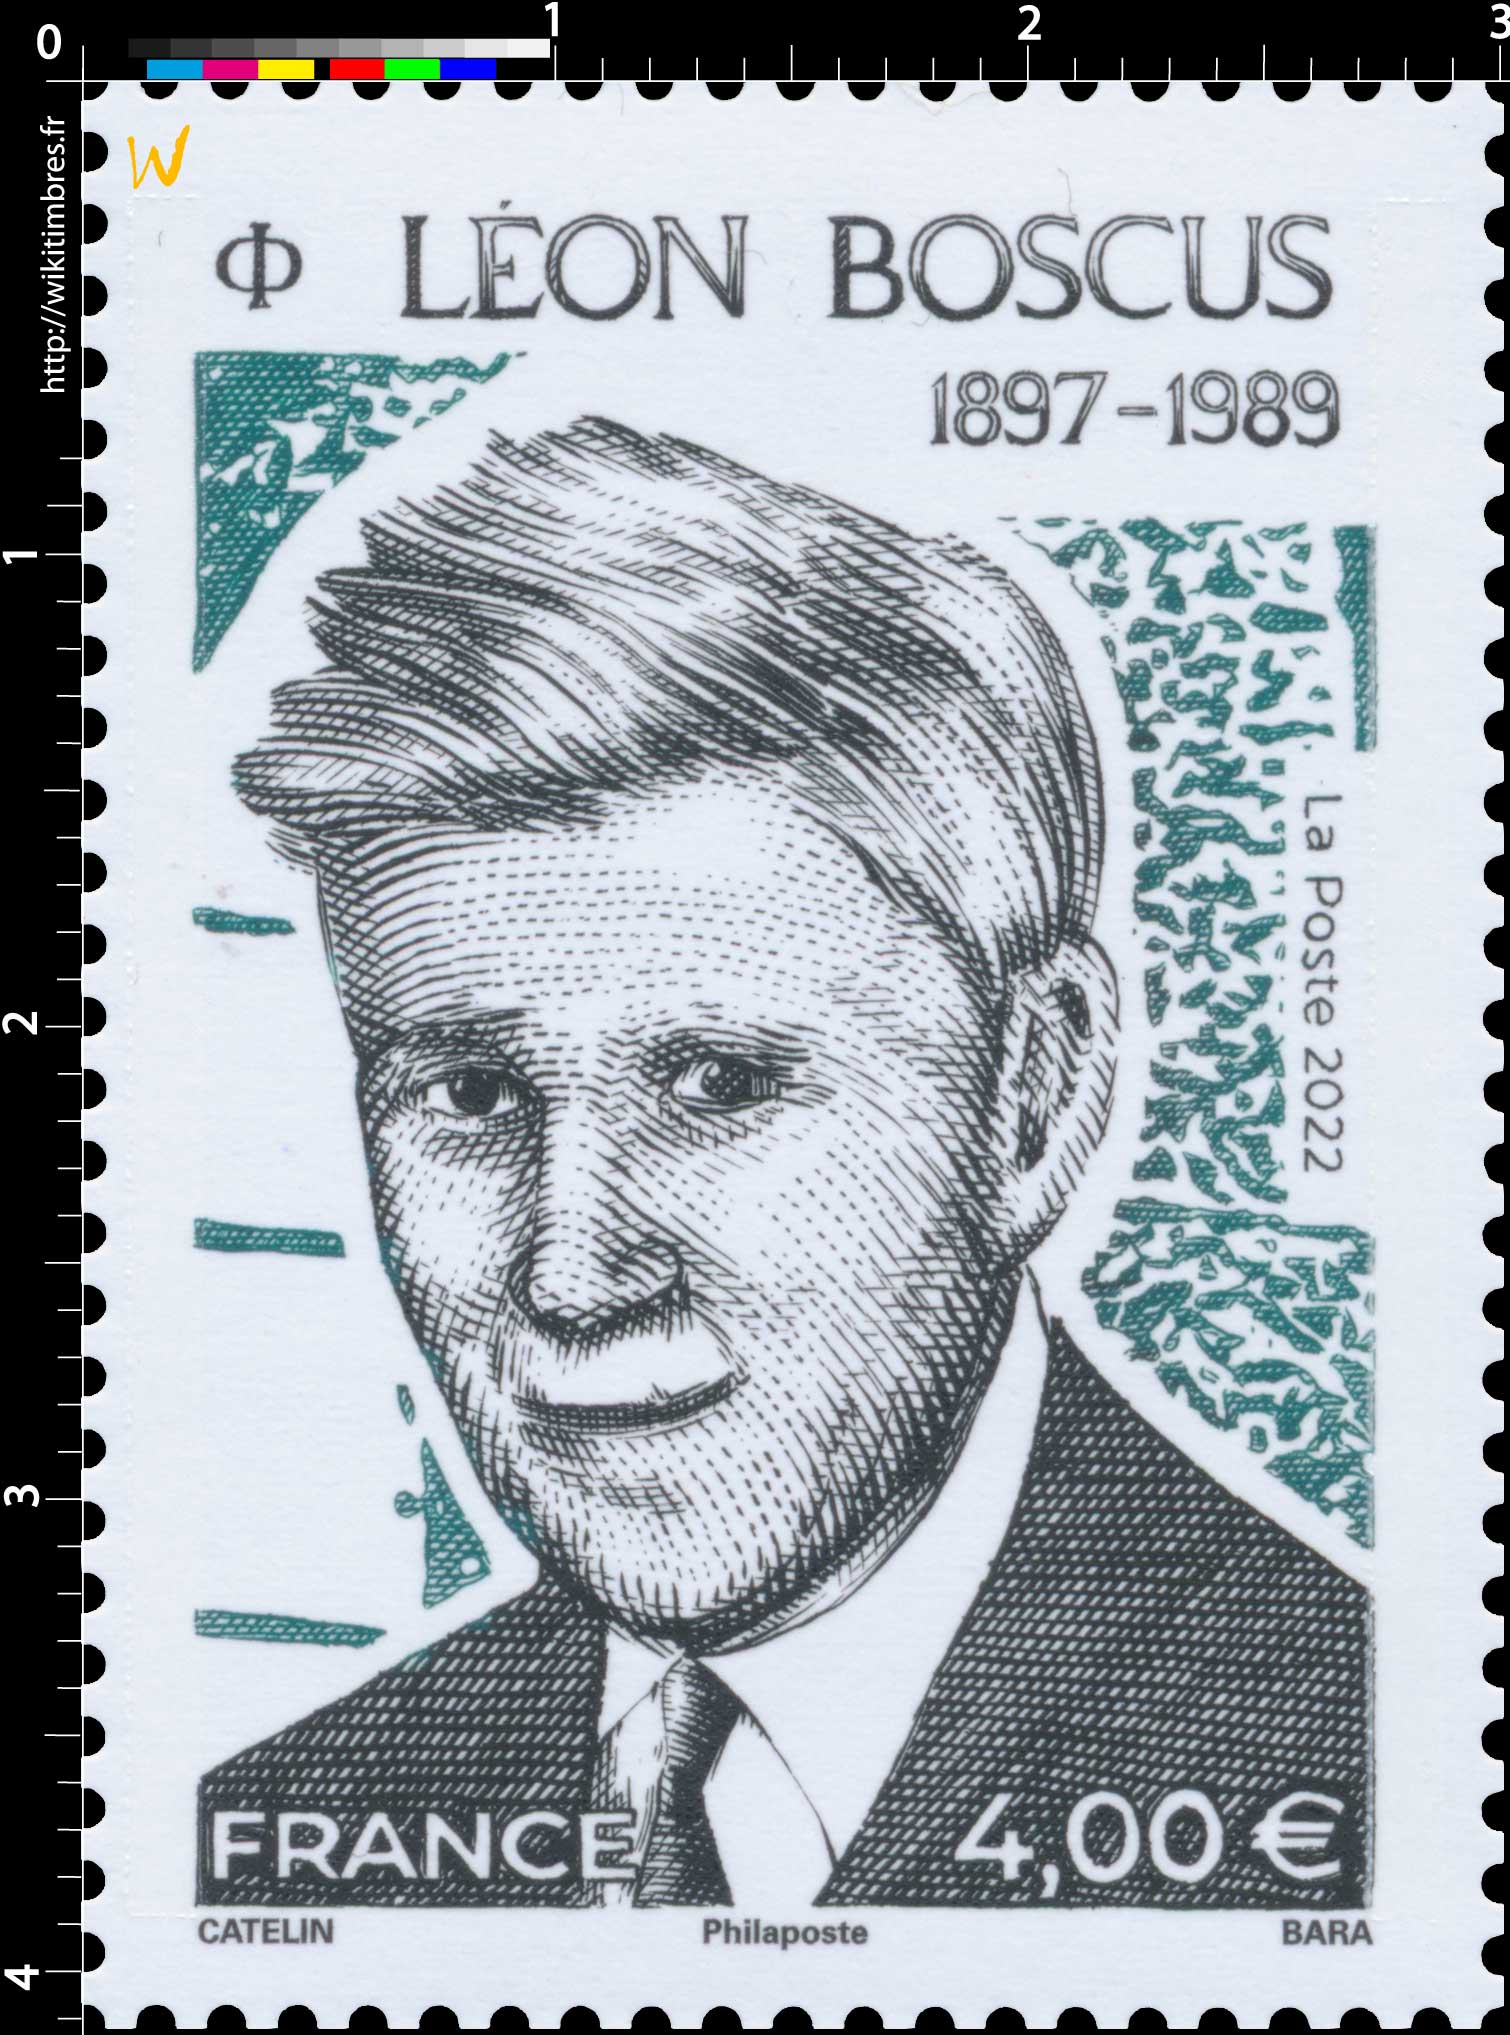 2022 LEON BOSCUS 1897 - 1989